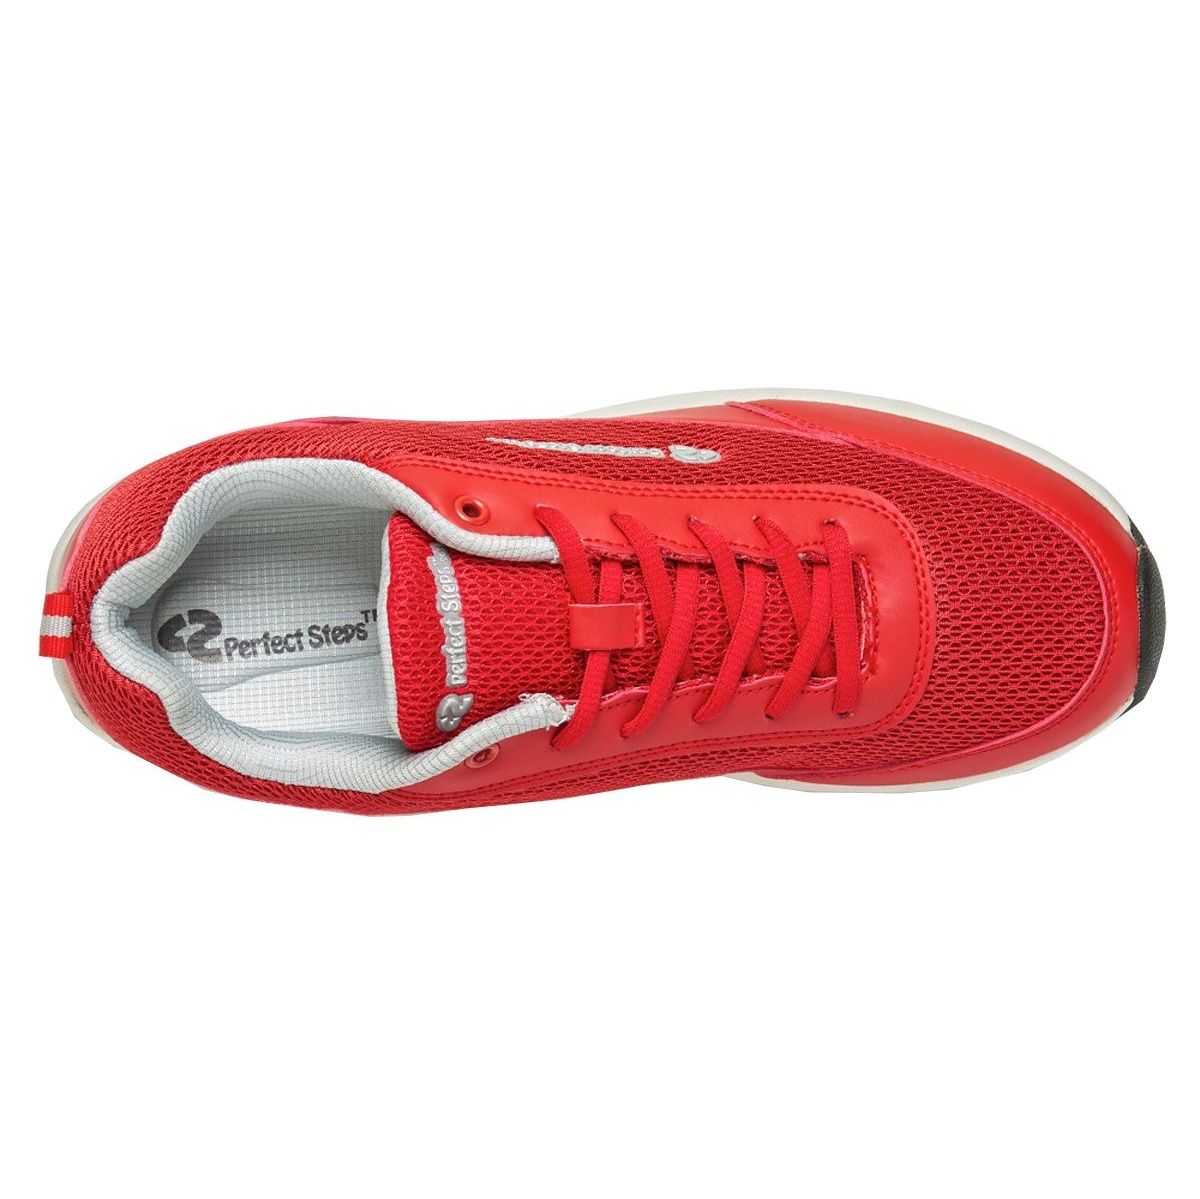 کفش مخصوص پیاده روی مردانه پرفکت استپس مدل آرمیس رنگ قرمز